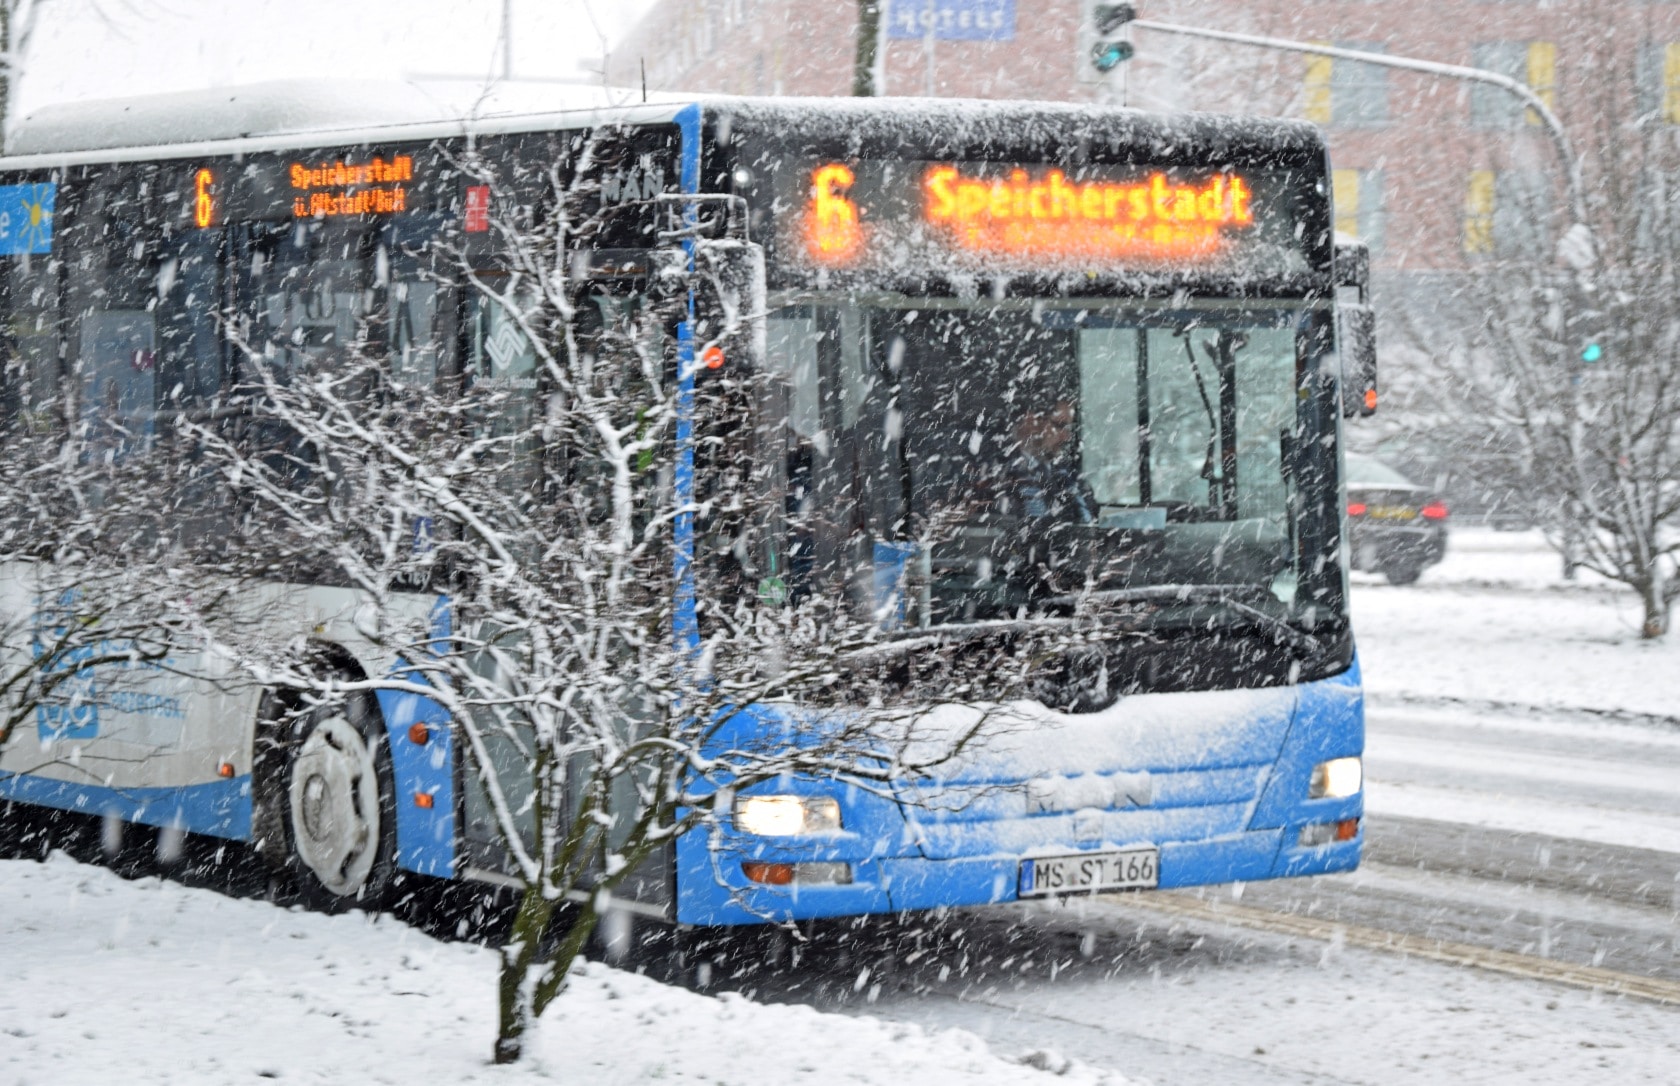 Bussengefahr: So teuer wird es, wenn Schnee auf dem Auto liegen bleibt. -  20 Minuten